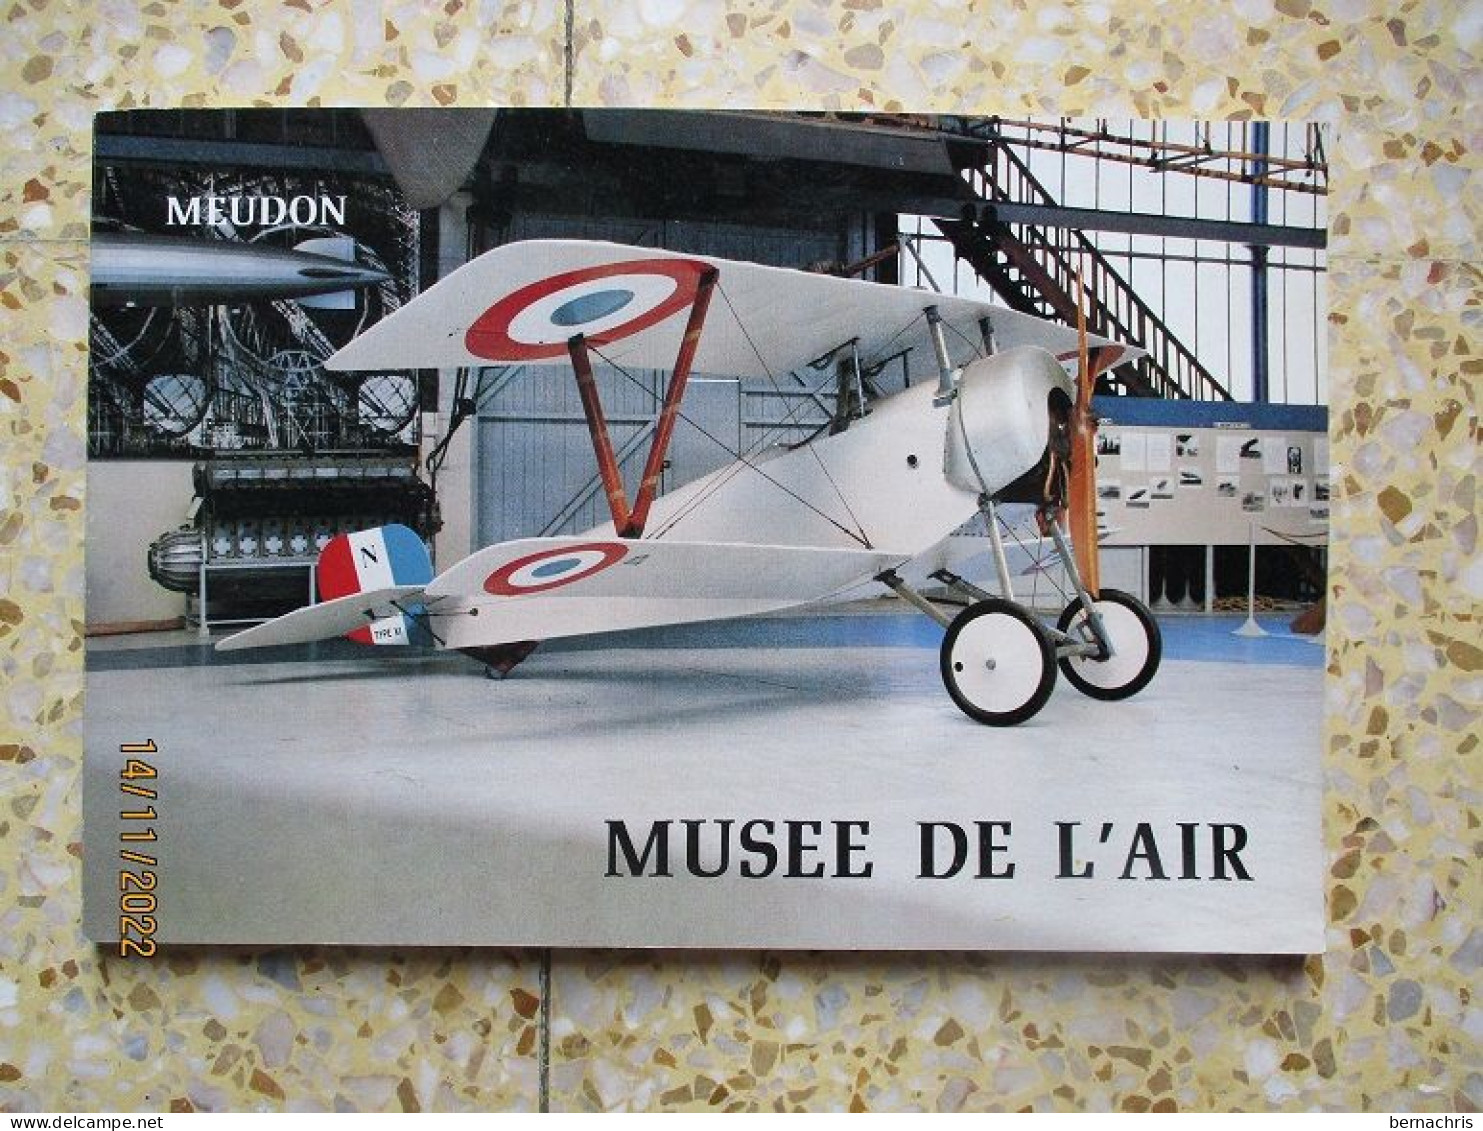 Livre Du Musée De L'air à Meudon - Français